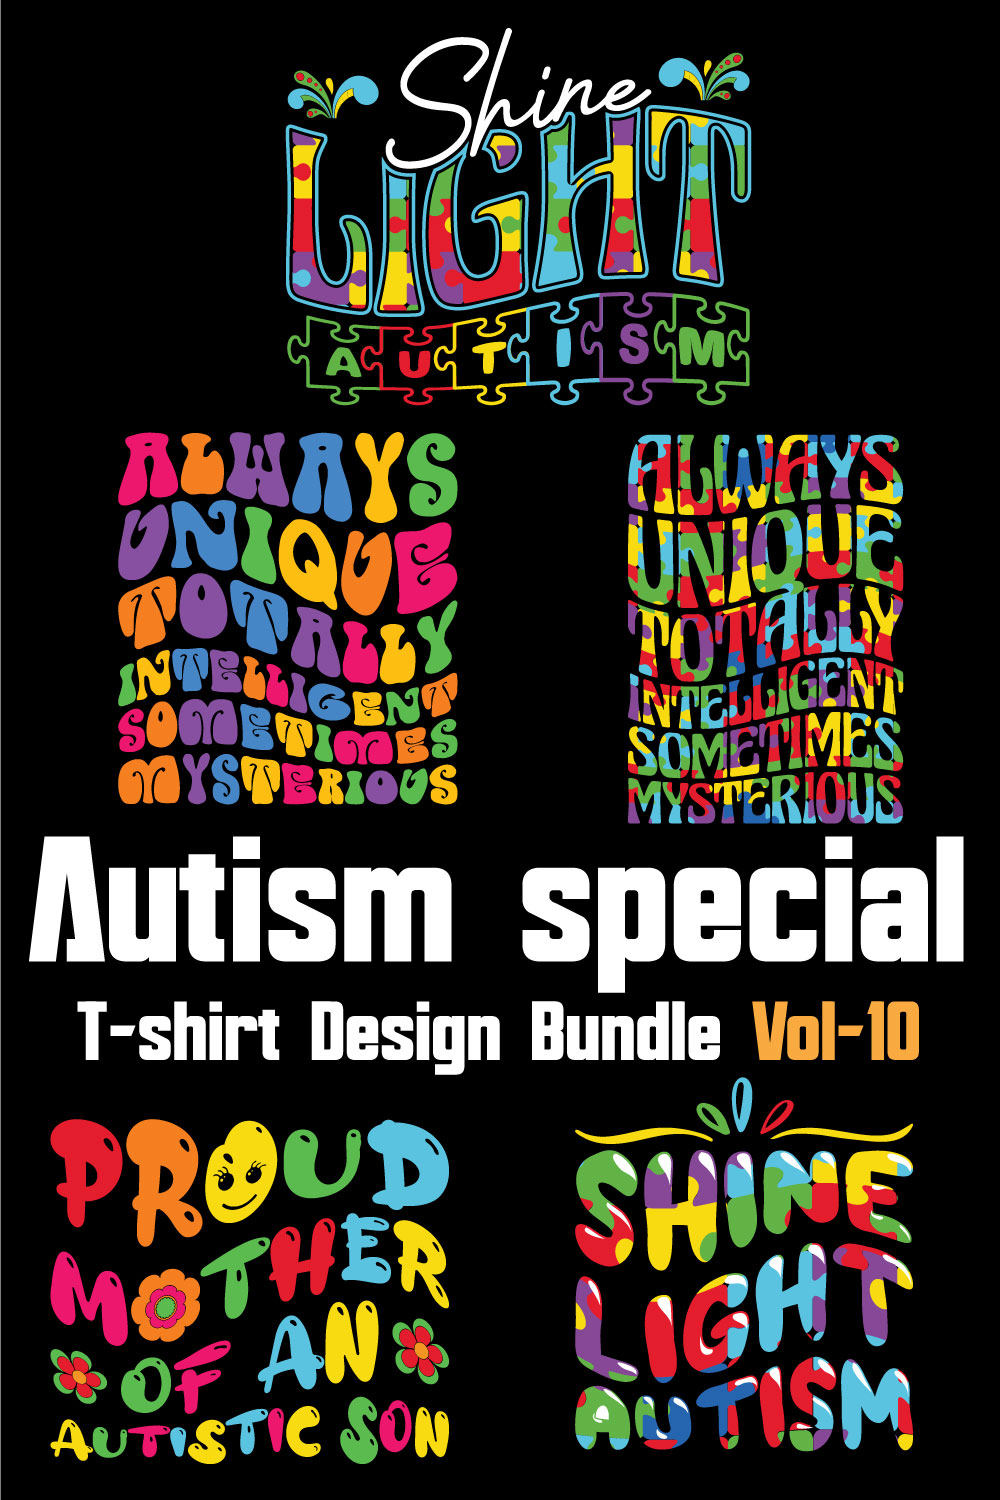 Autism Special T-shirt Design Bundle Vol-10 pinterest preview image.